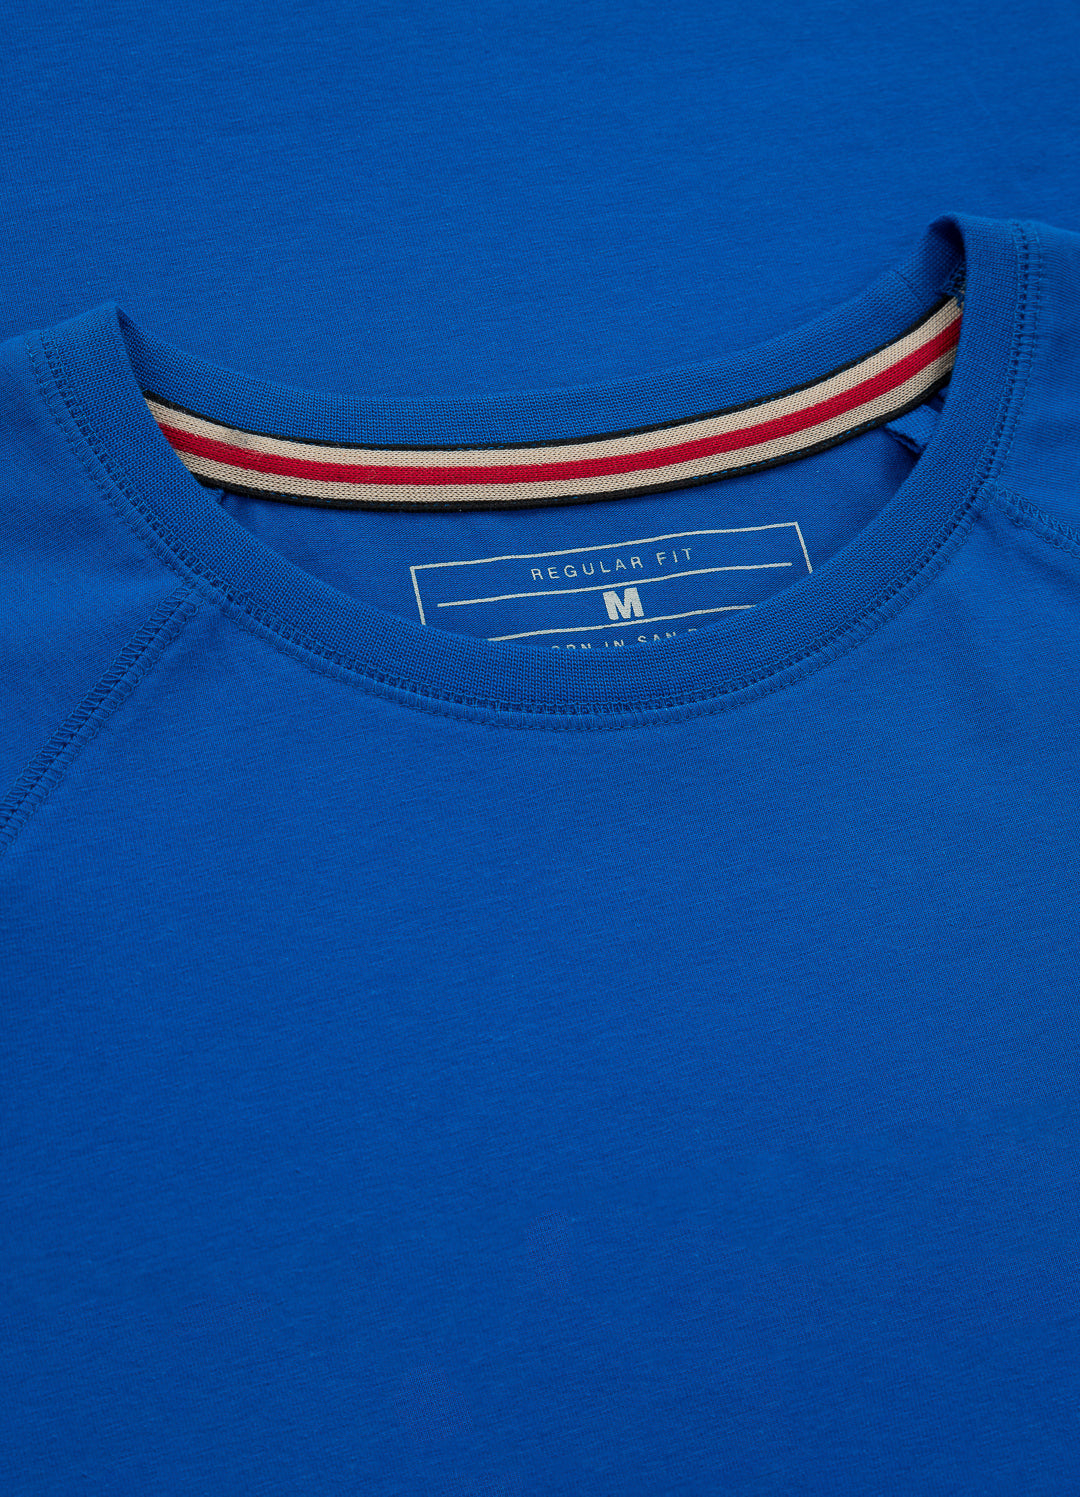 MERCADO Spandex Heavyweight T-shirt Royal Blue.